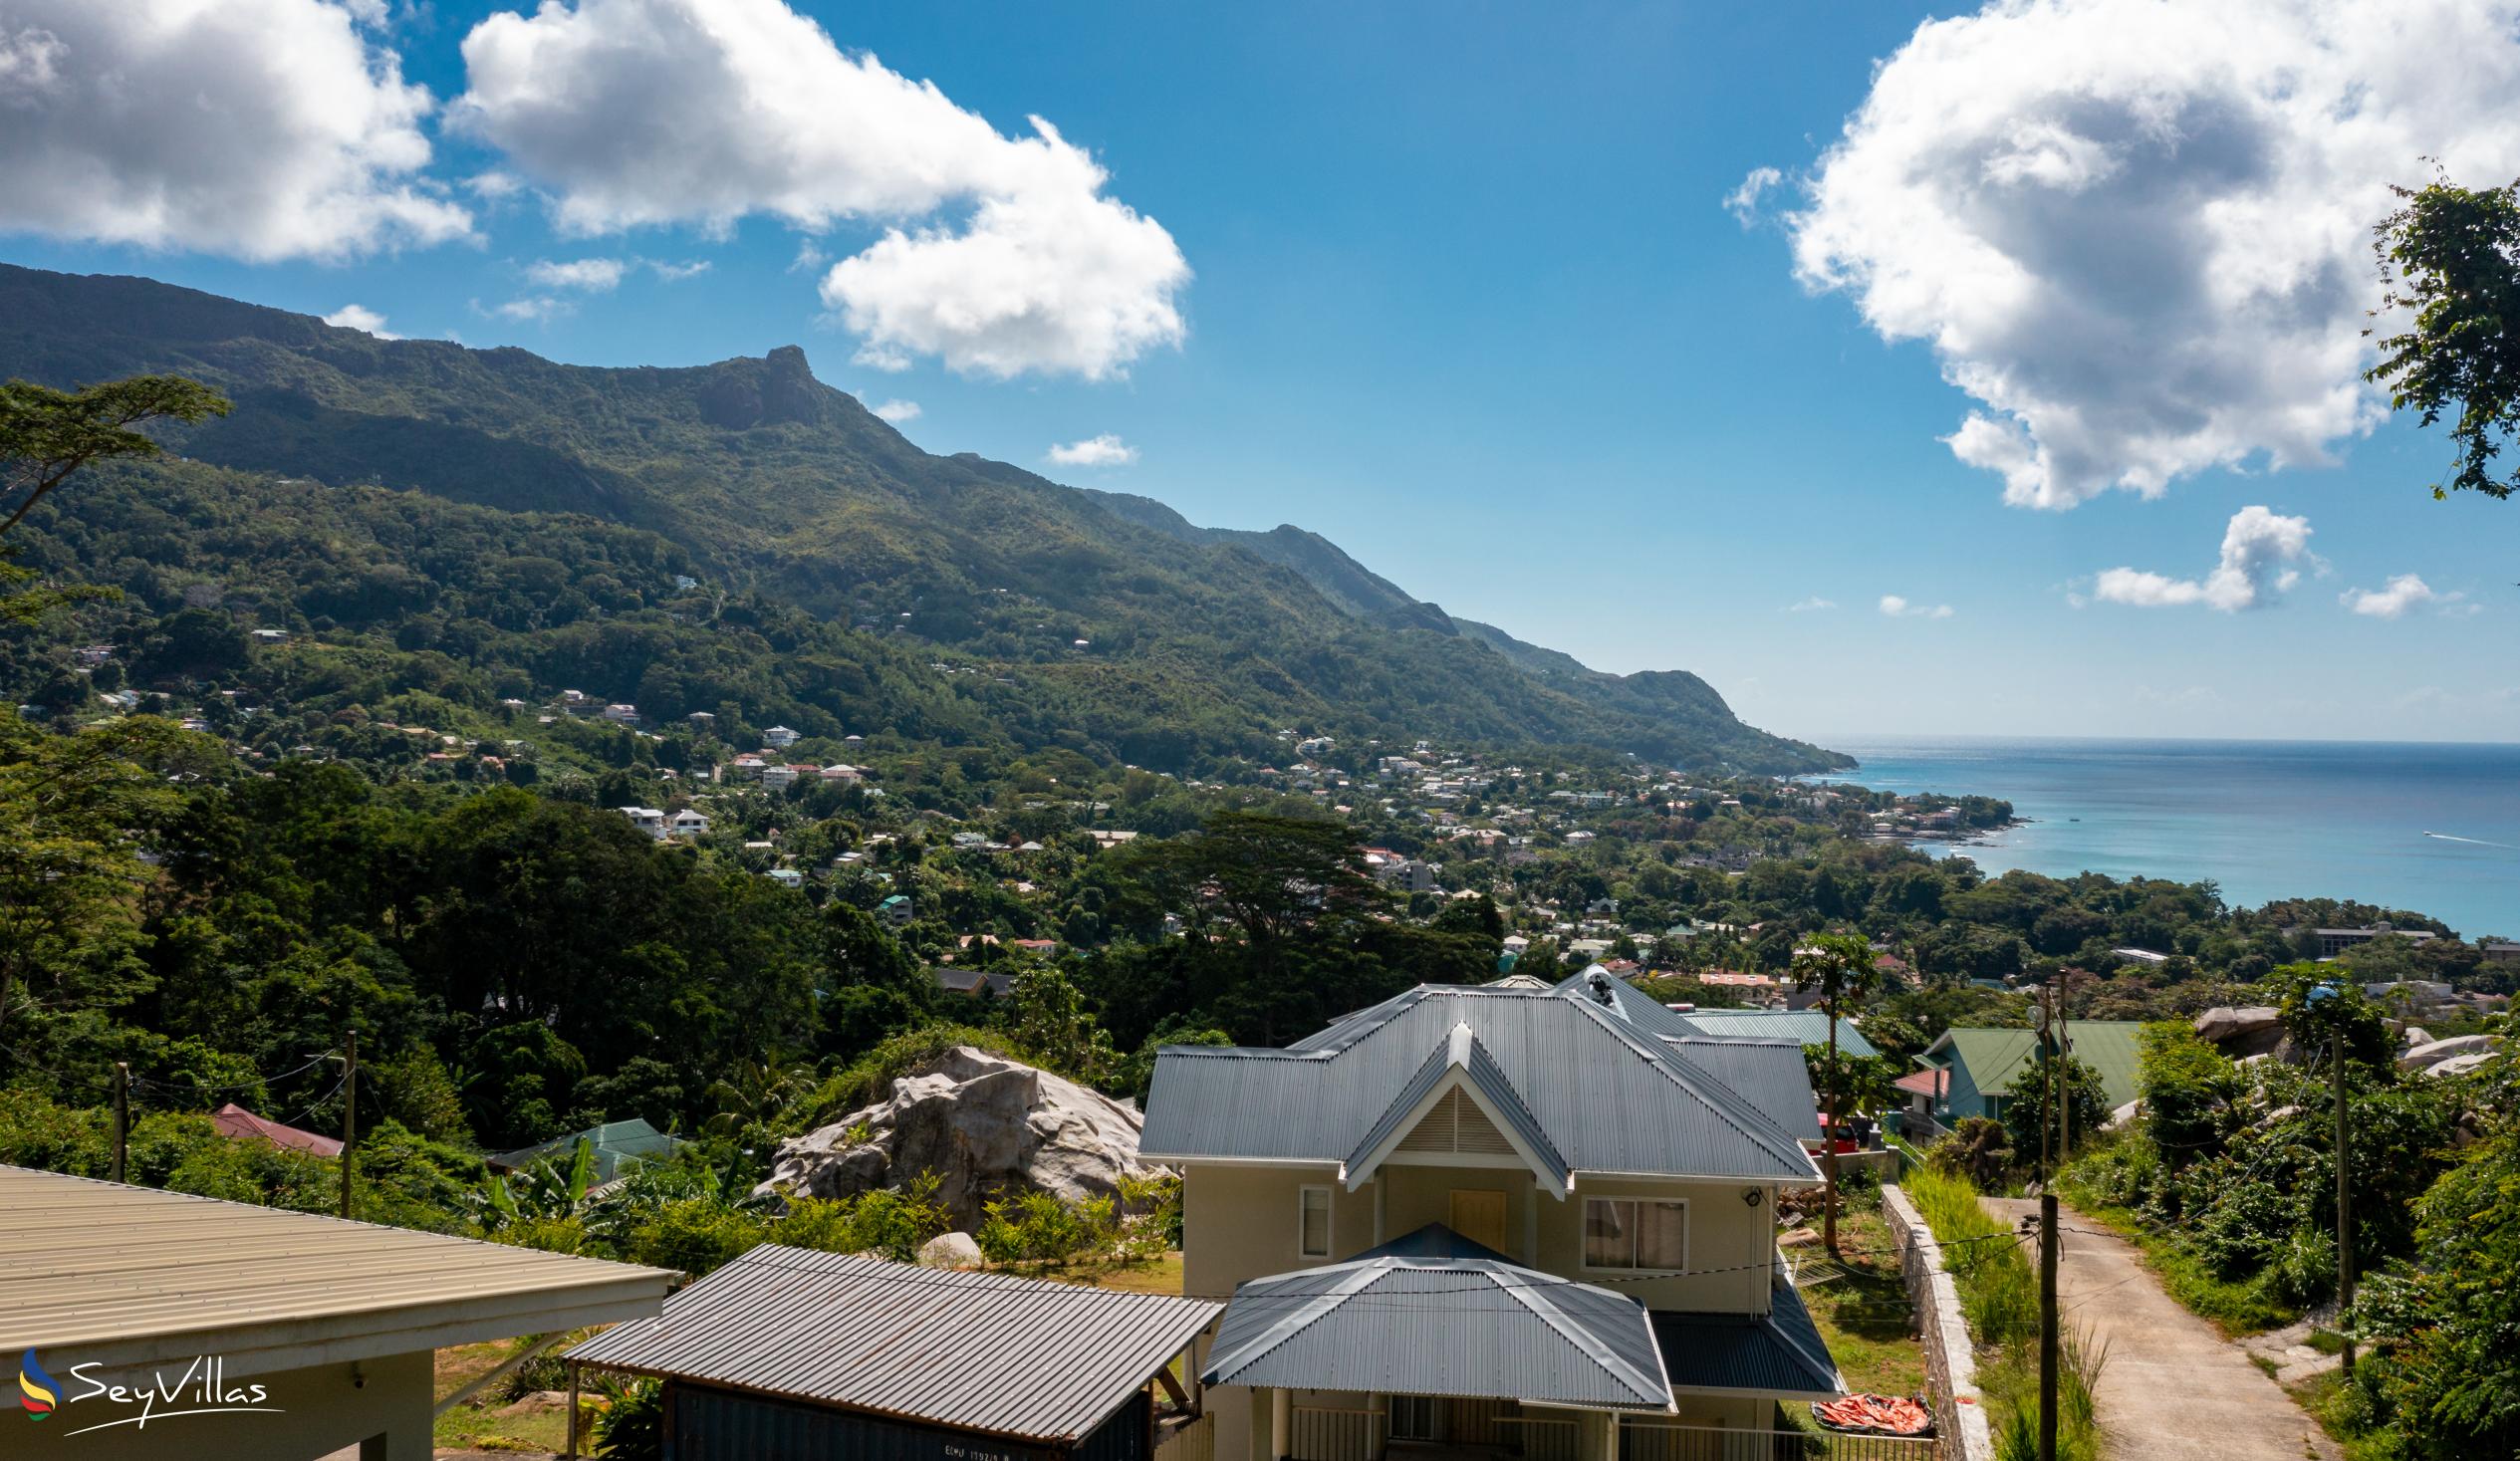 Foto 24: Roz Avel Villa - Posizione - Mahé (Seychelles)